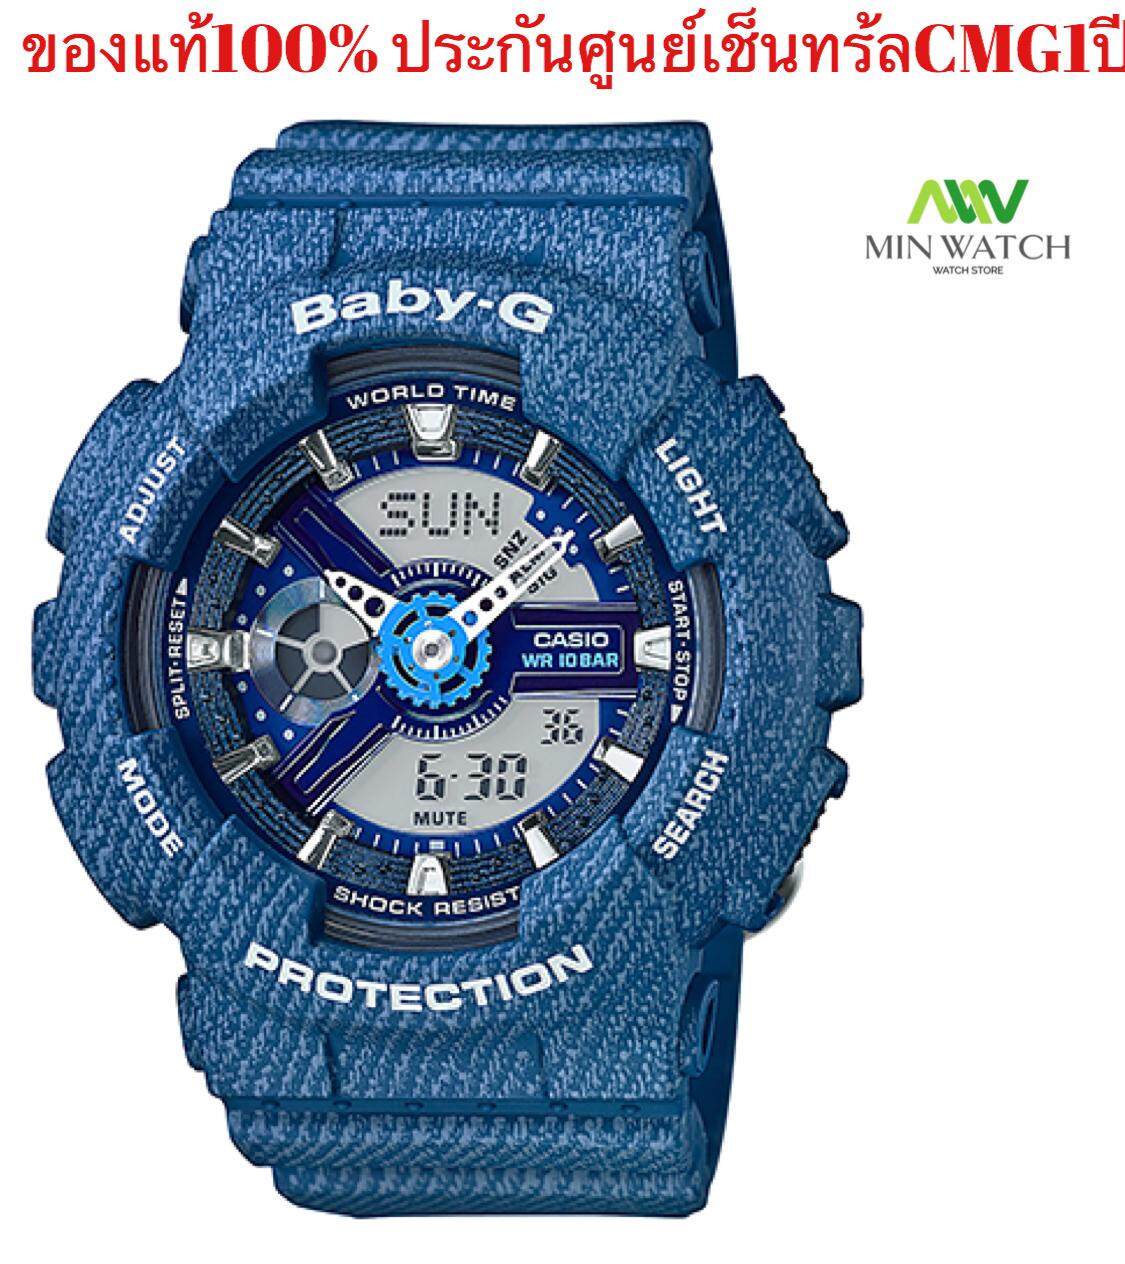 นาฬิกา รุ่น BA-110 Casio Baby-G นาฬิกาข้อมือผู้หญิง สายเรซิ่น รุ่น BA-110DC-2A1สีน้ำเงิน BA-110DC-2A2 - สีน้ำเงินสีอ่อนใหม่ของแท้100% แบตเตอรี่10 ปี ประกันศุนย์ CMG 1ปี จากร้าน MIN WATCH สีของสายนาฬิกา น้ำเงิน2a2